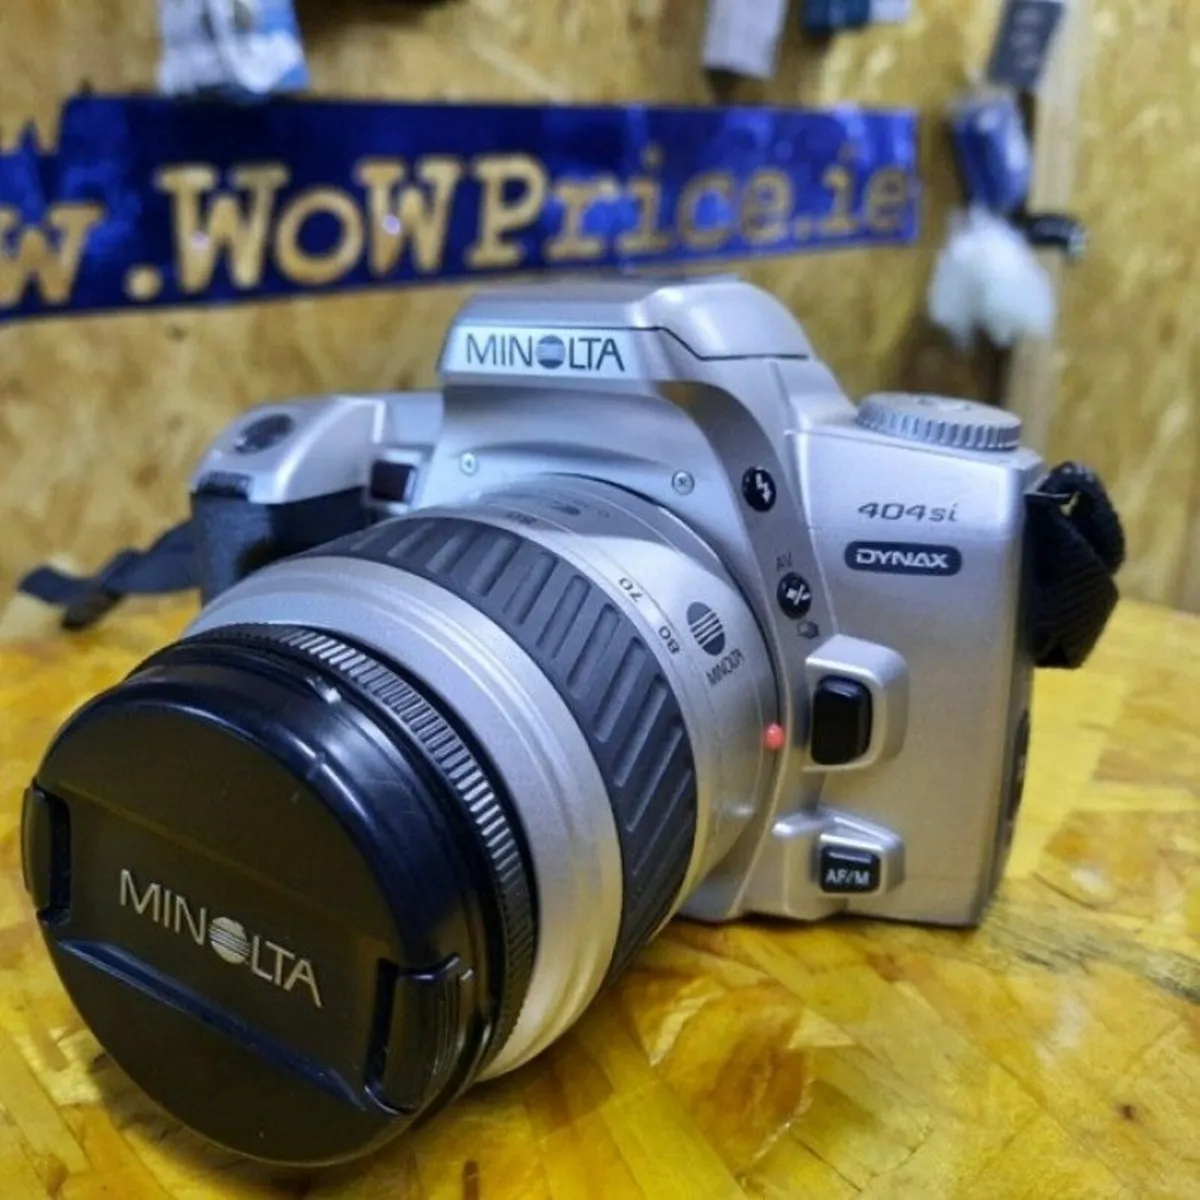 Minolta Dynax 404si 35-80mm 35mm Film Camera